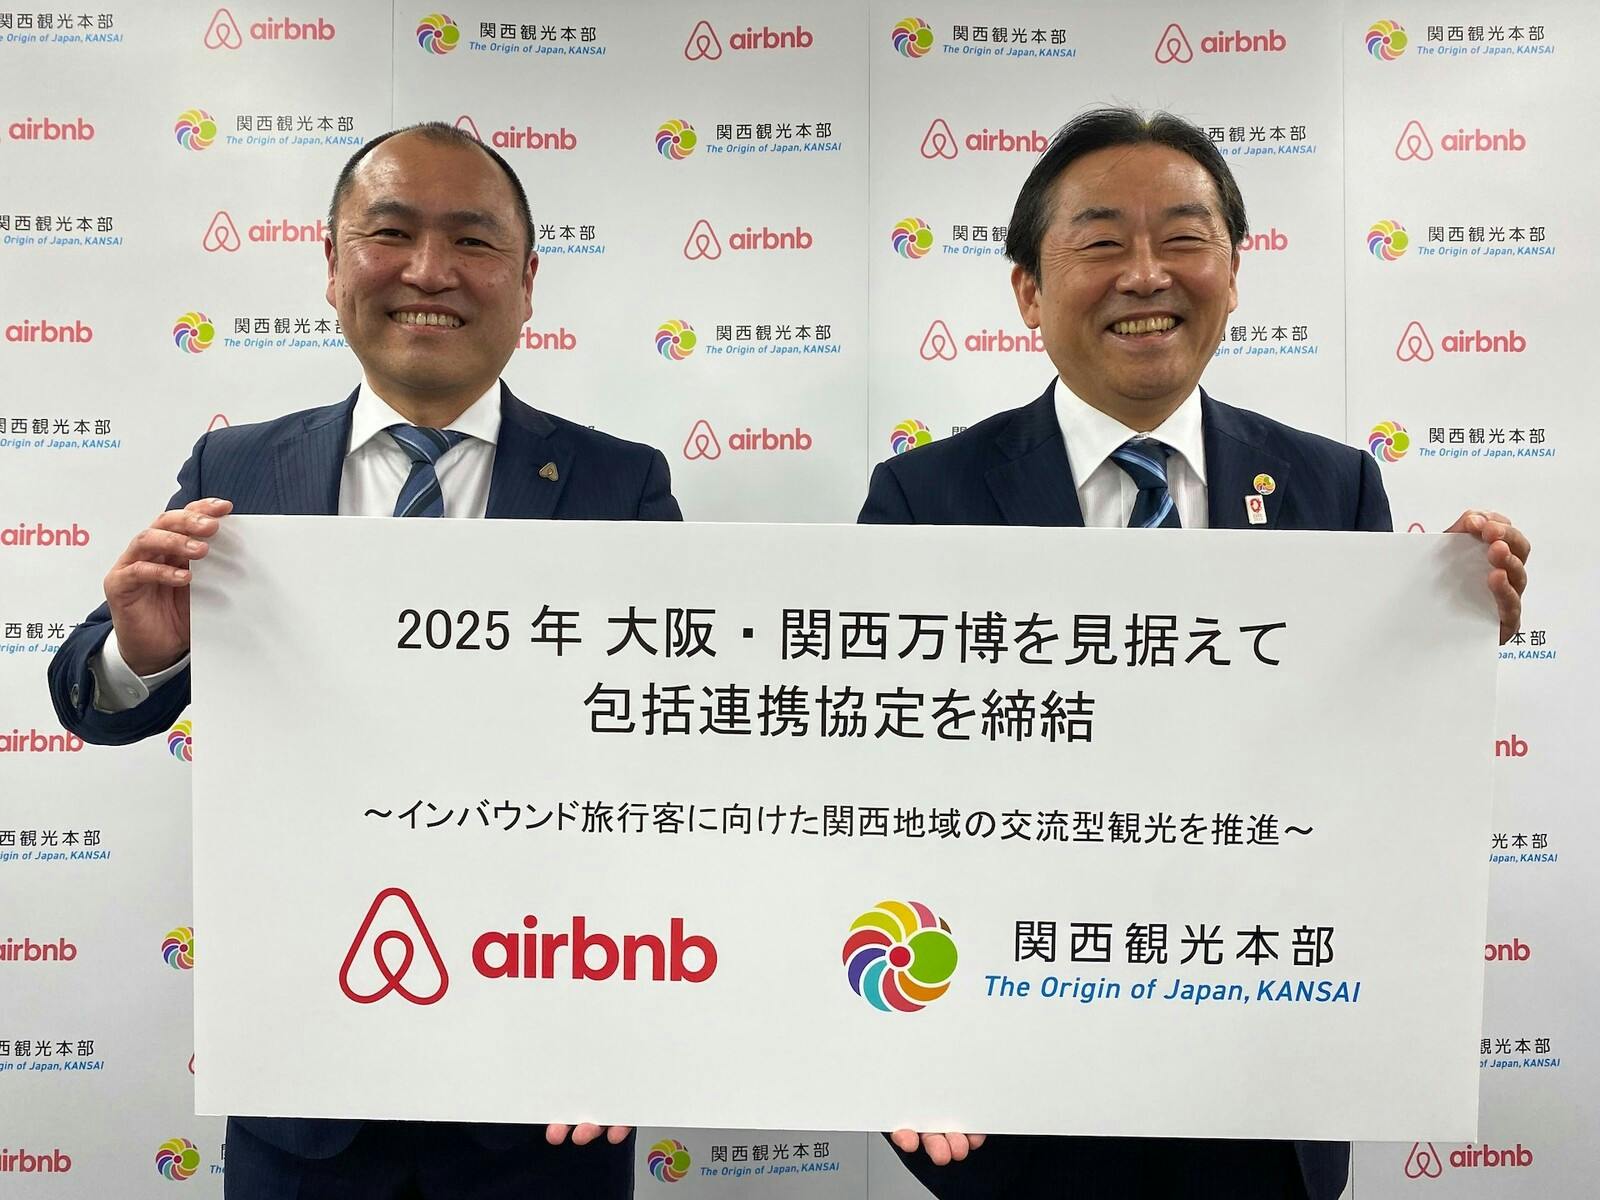 2025年大阪万博見据え、関西観光本部・Airbnbが包括連携協定を締結